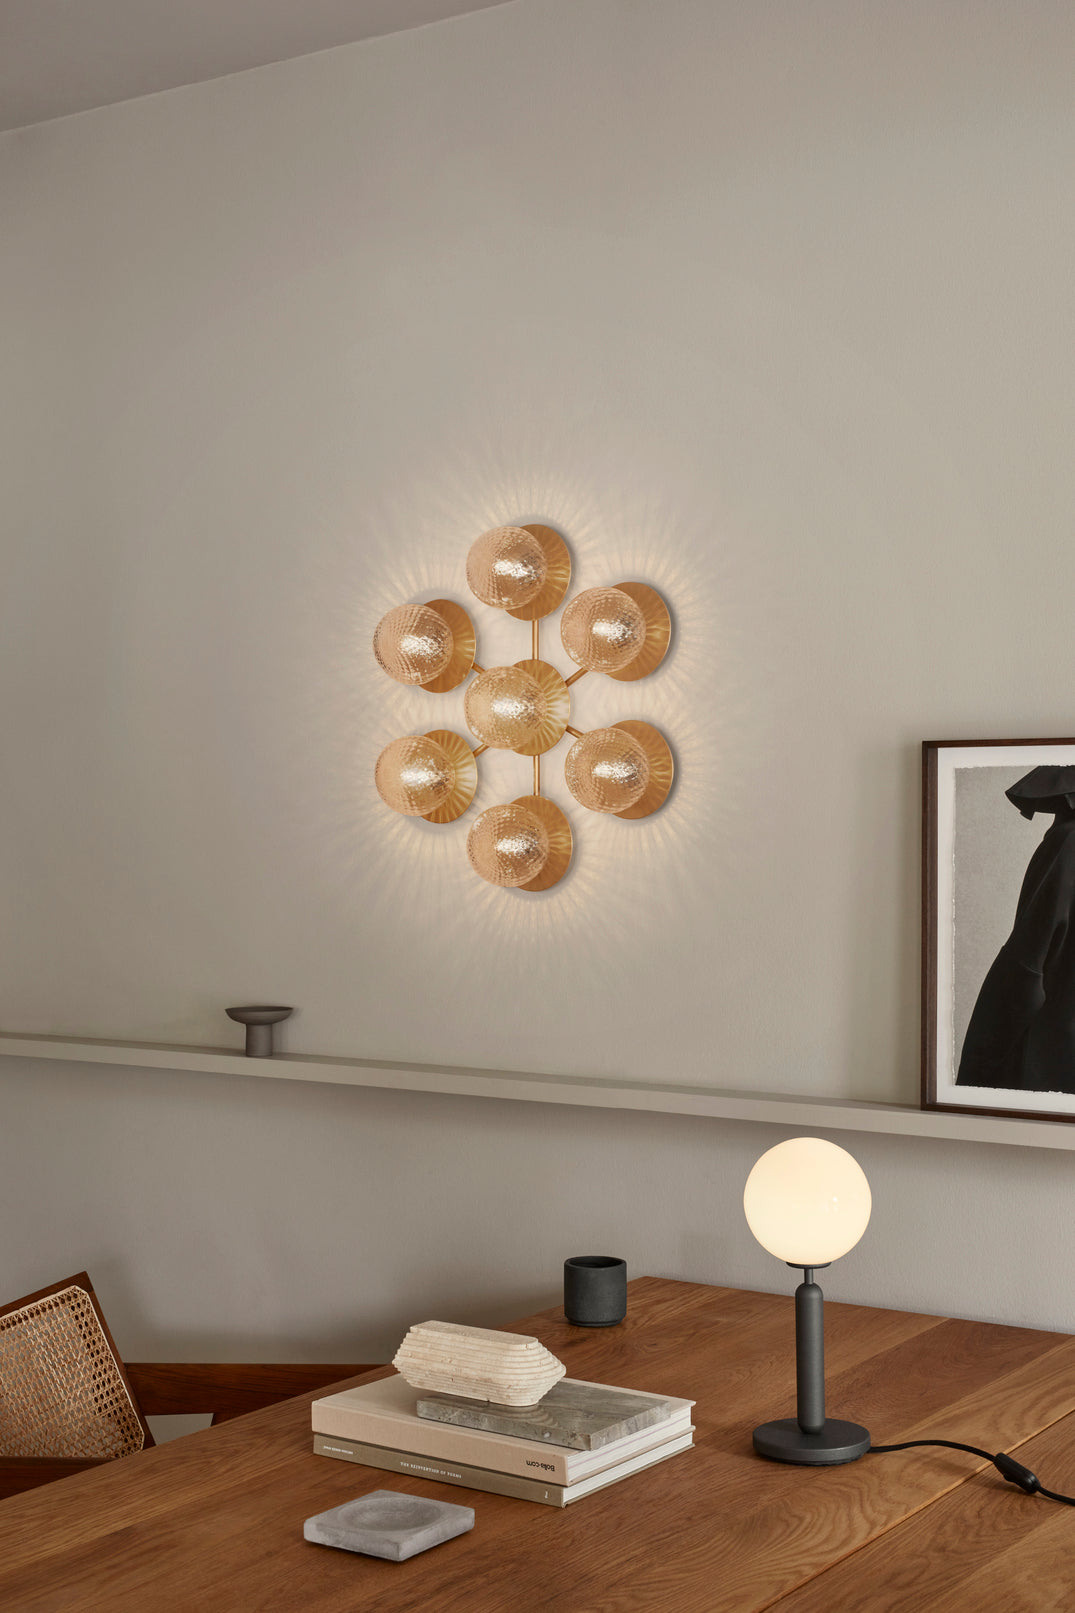 Væglampe med lampeskærme af klart optikglas og gylden fatning og stel, på hvid væg ved siden af skrivebord